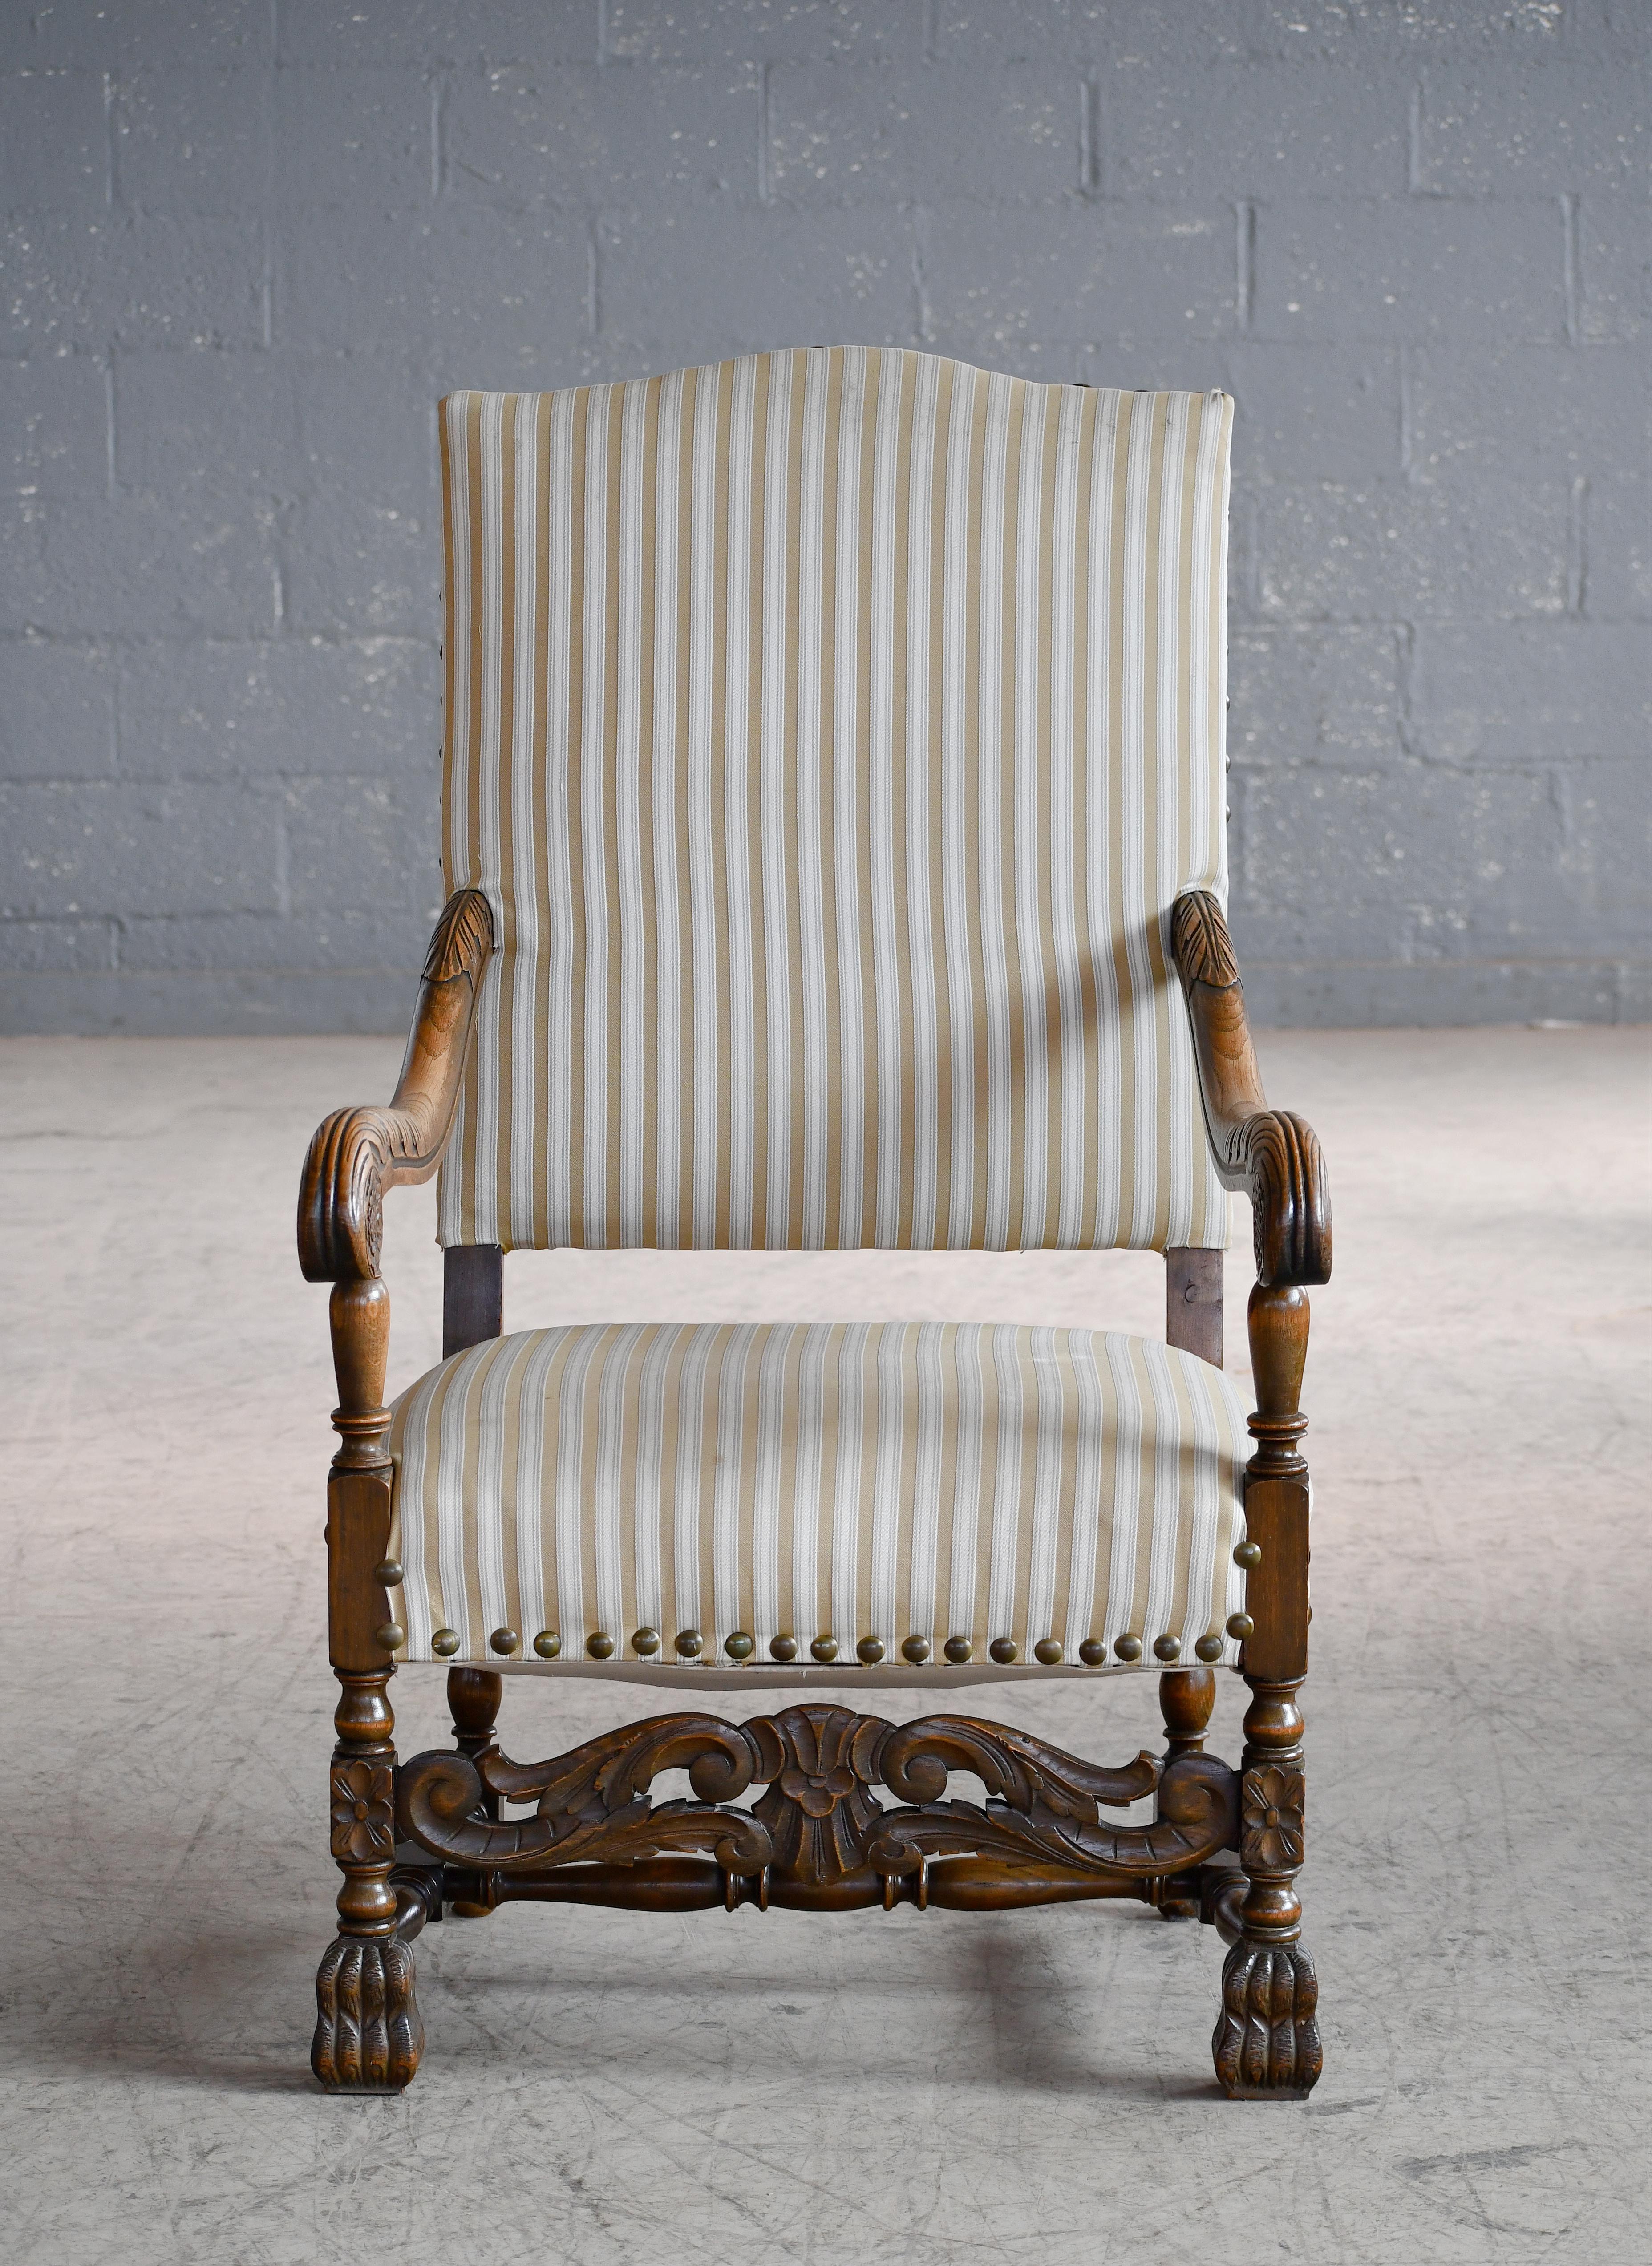 Magnifique chaise à trône en chêne sculpté, fabriquée au Danemark, vers 1900. Solide et robuste. Le tissu a été retapissé à une date ultérieure et est en bon état de propreté. Solide et robuste, en très bon état général, avec une belle usure et